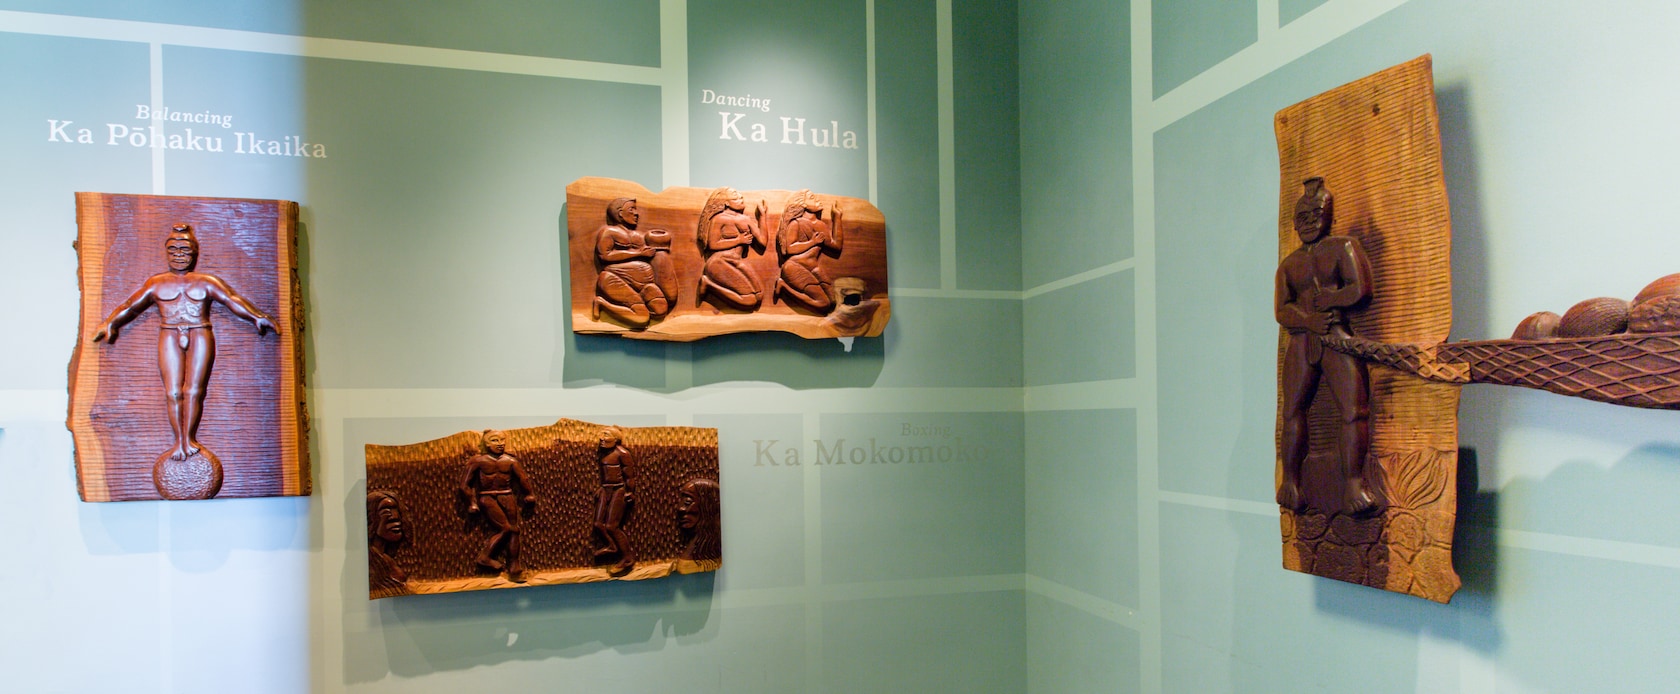 先住民のさまざまな動作を表現した木のレリーフ、その説明を簡潔に示すハワイ語のフレーズと英語の翻訳